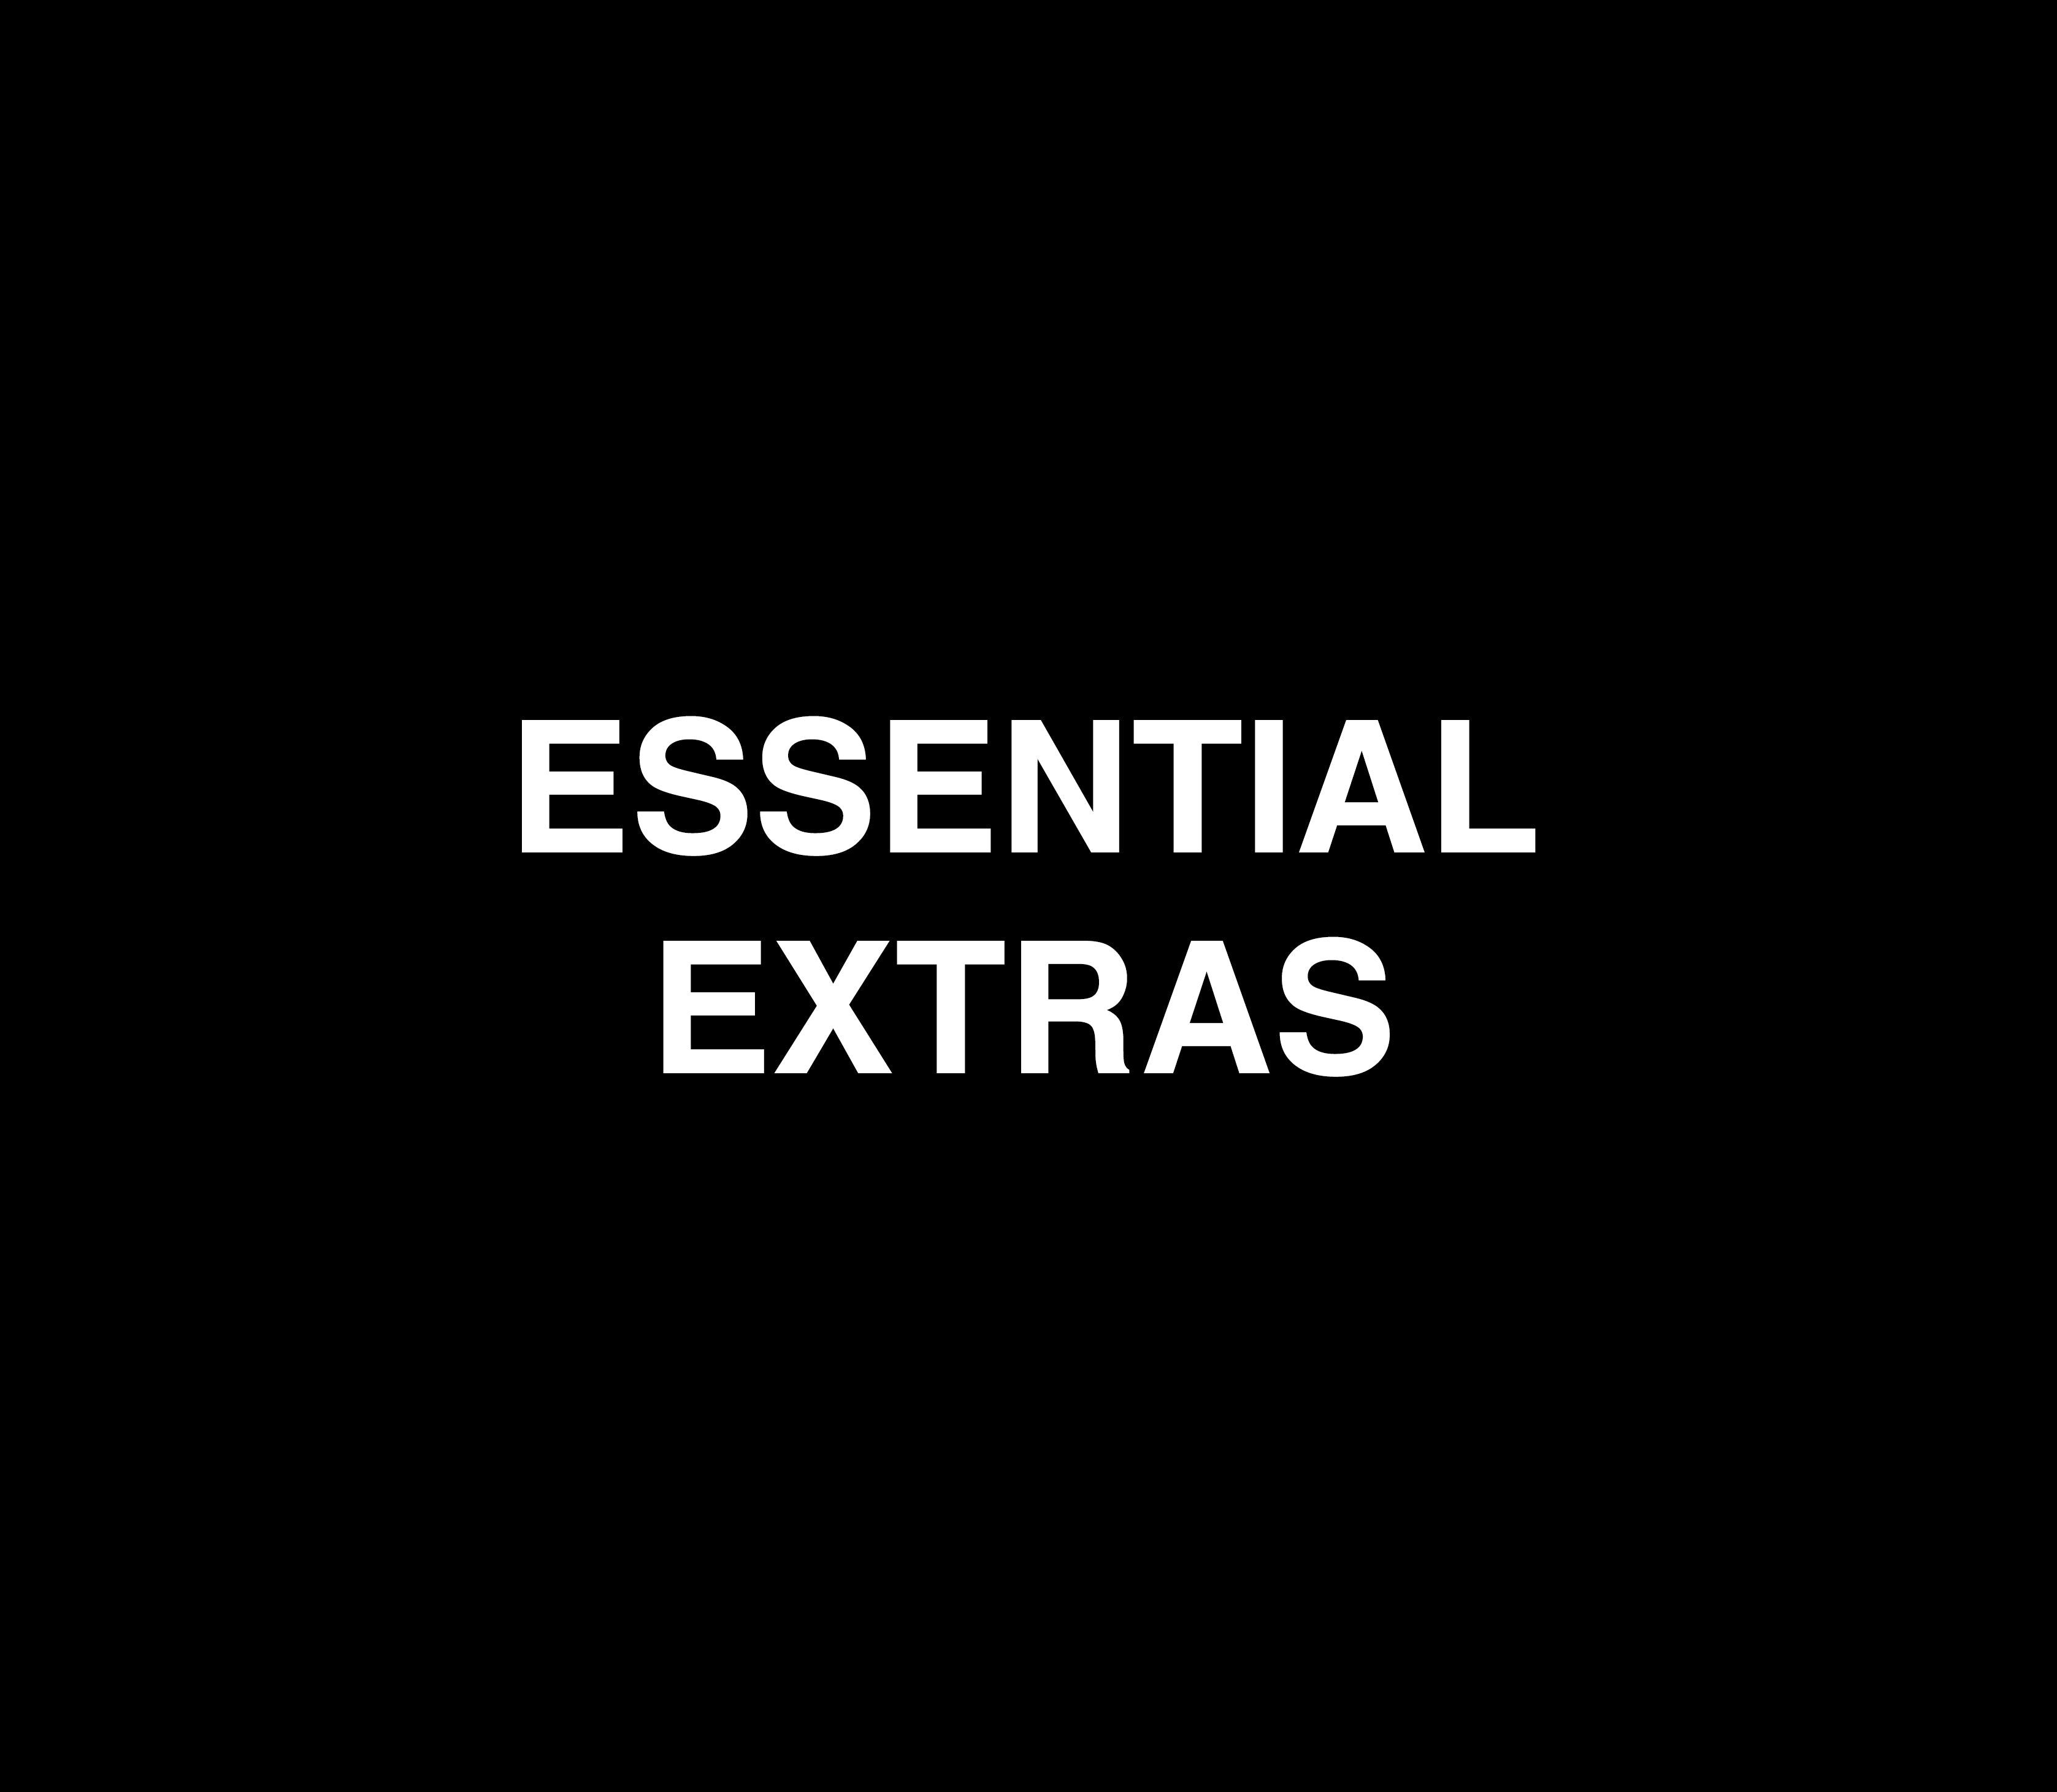 Essential Extras